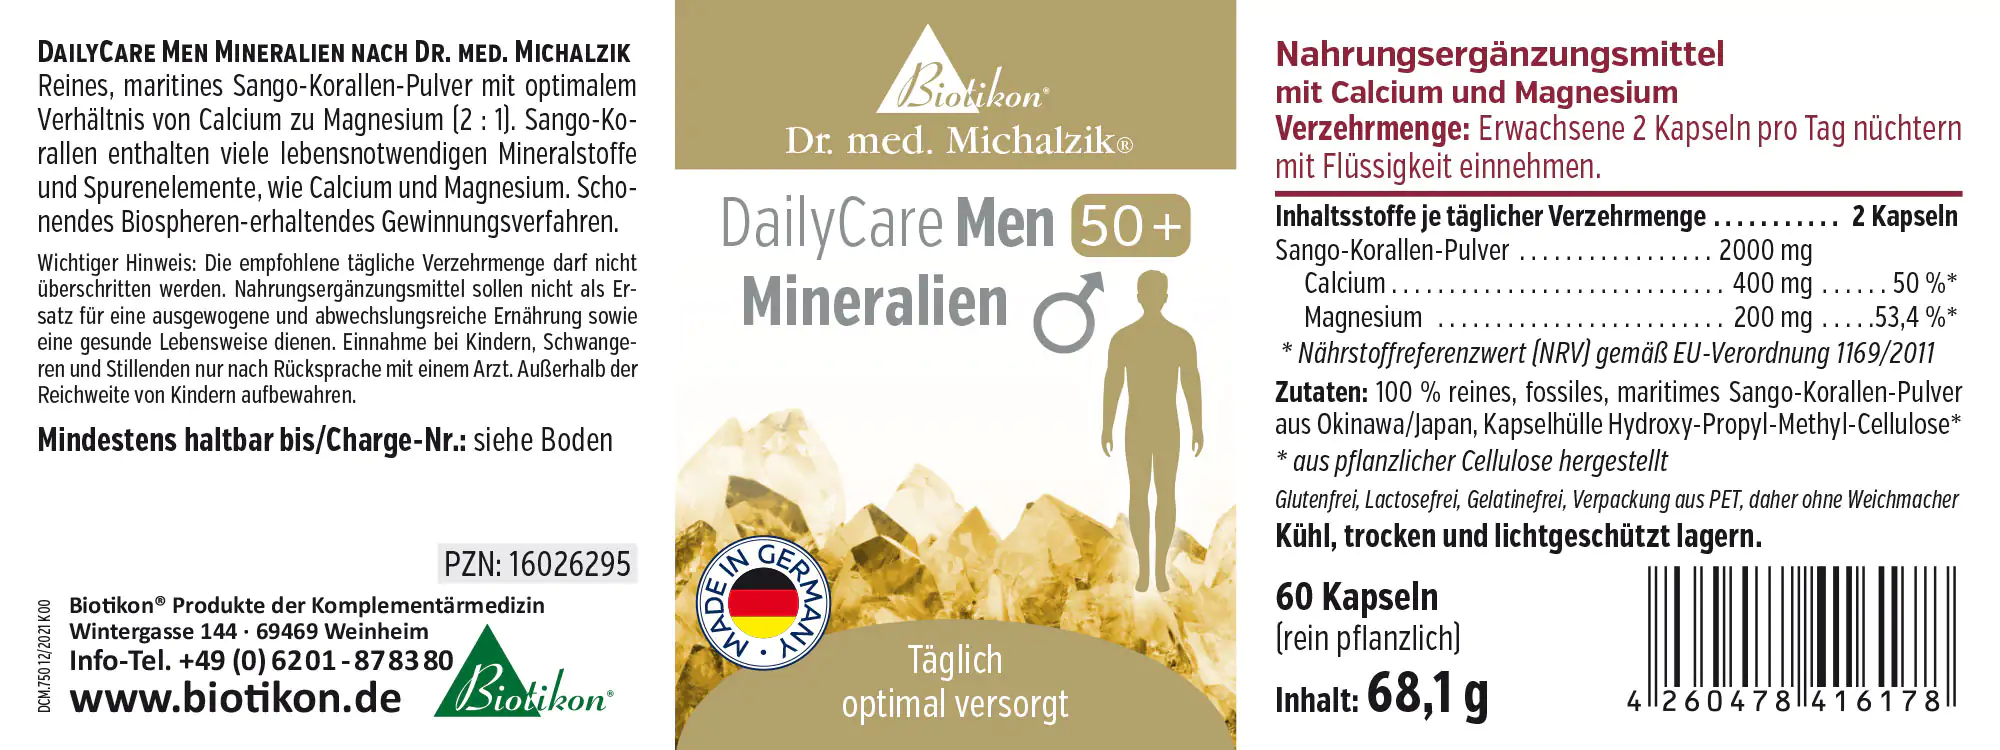 DailyCare Men 50+ aux minéraux